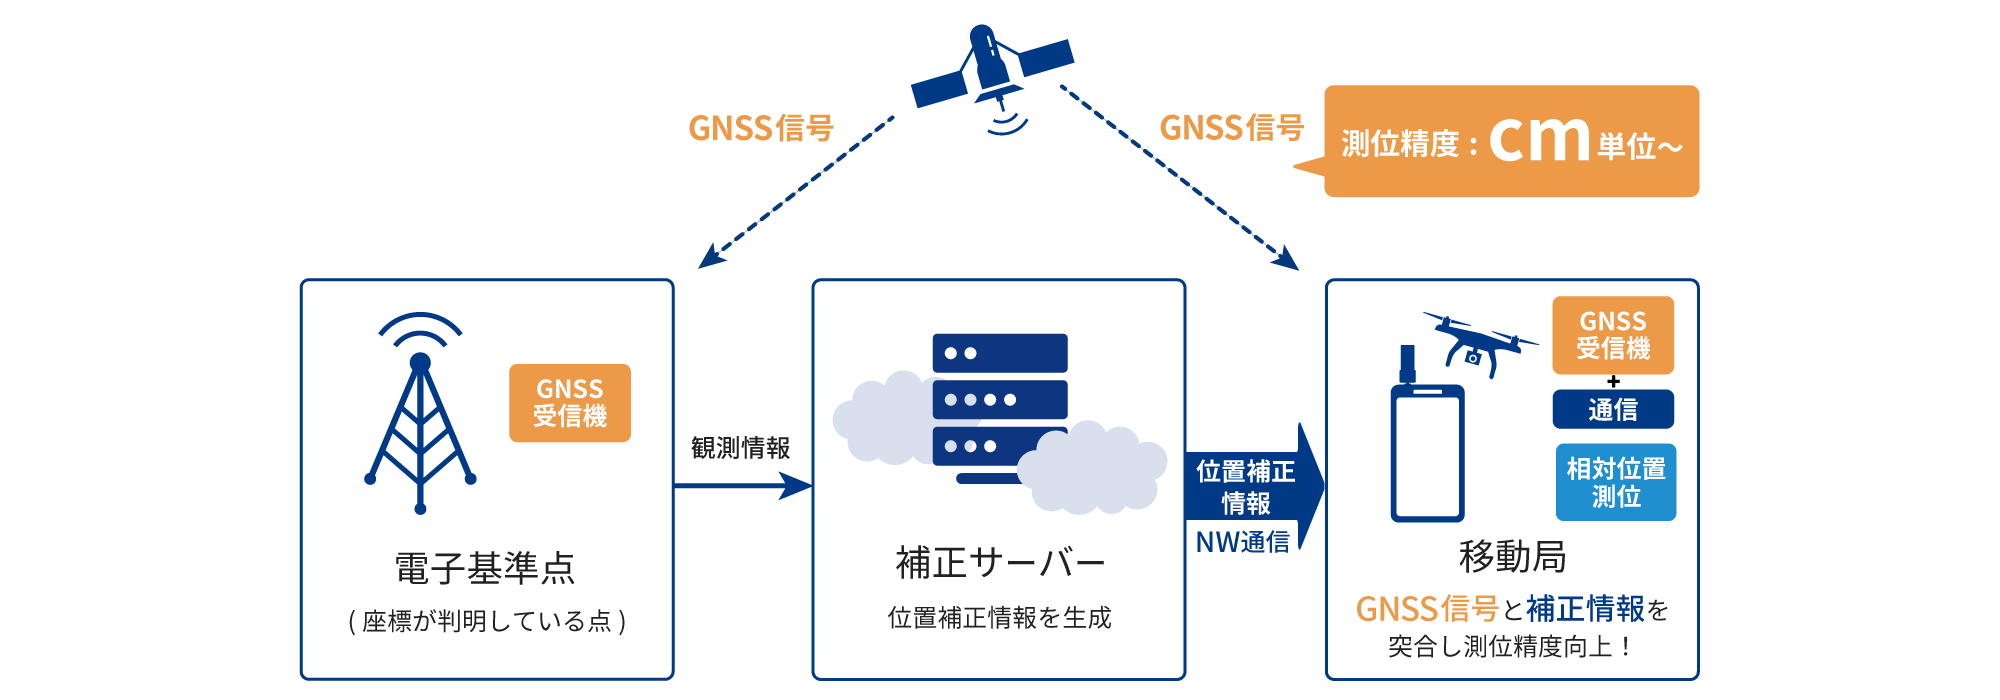 電子基準点（GNSS受信機）がGNSS信号（測位精度:cm单位~）を受信し、観測情報を 補正サーバーに送り、位置補正情報を生成。移動局でGNSS信号と補正情報を突合し測位精度向上!